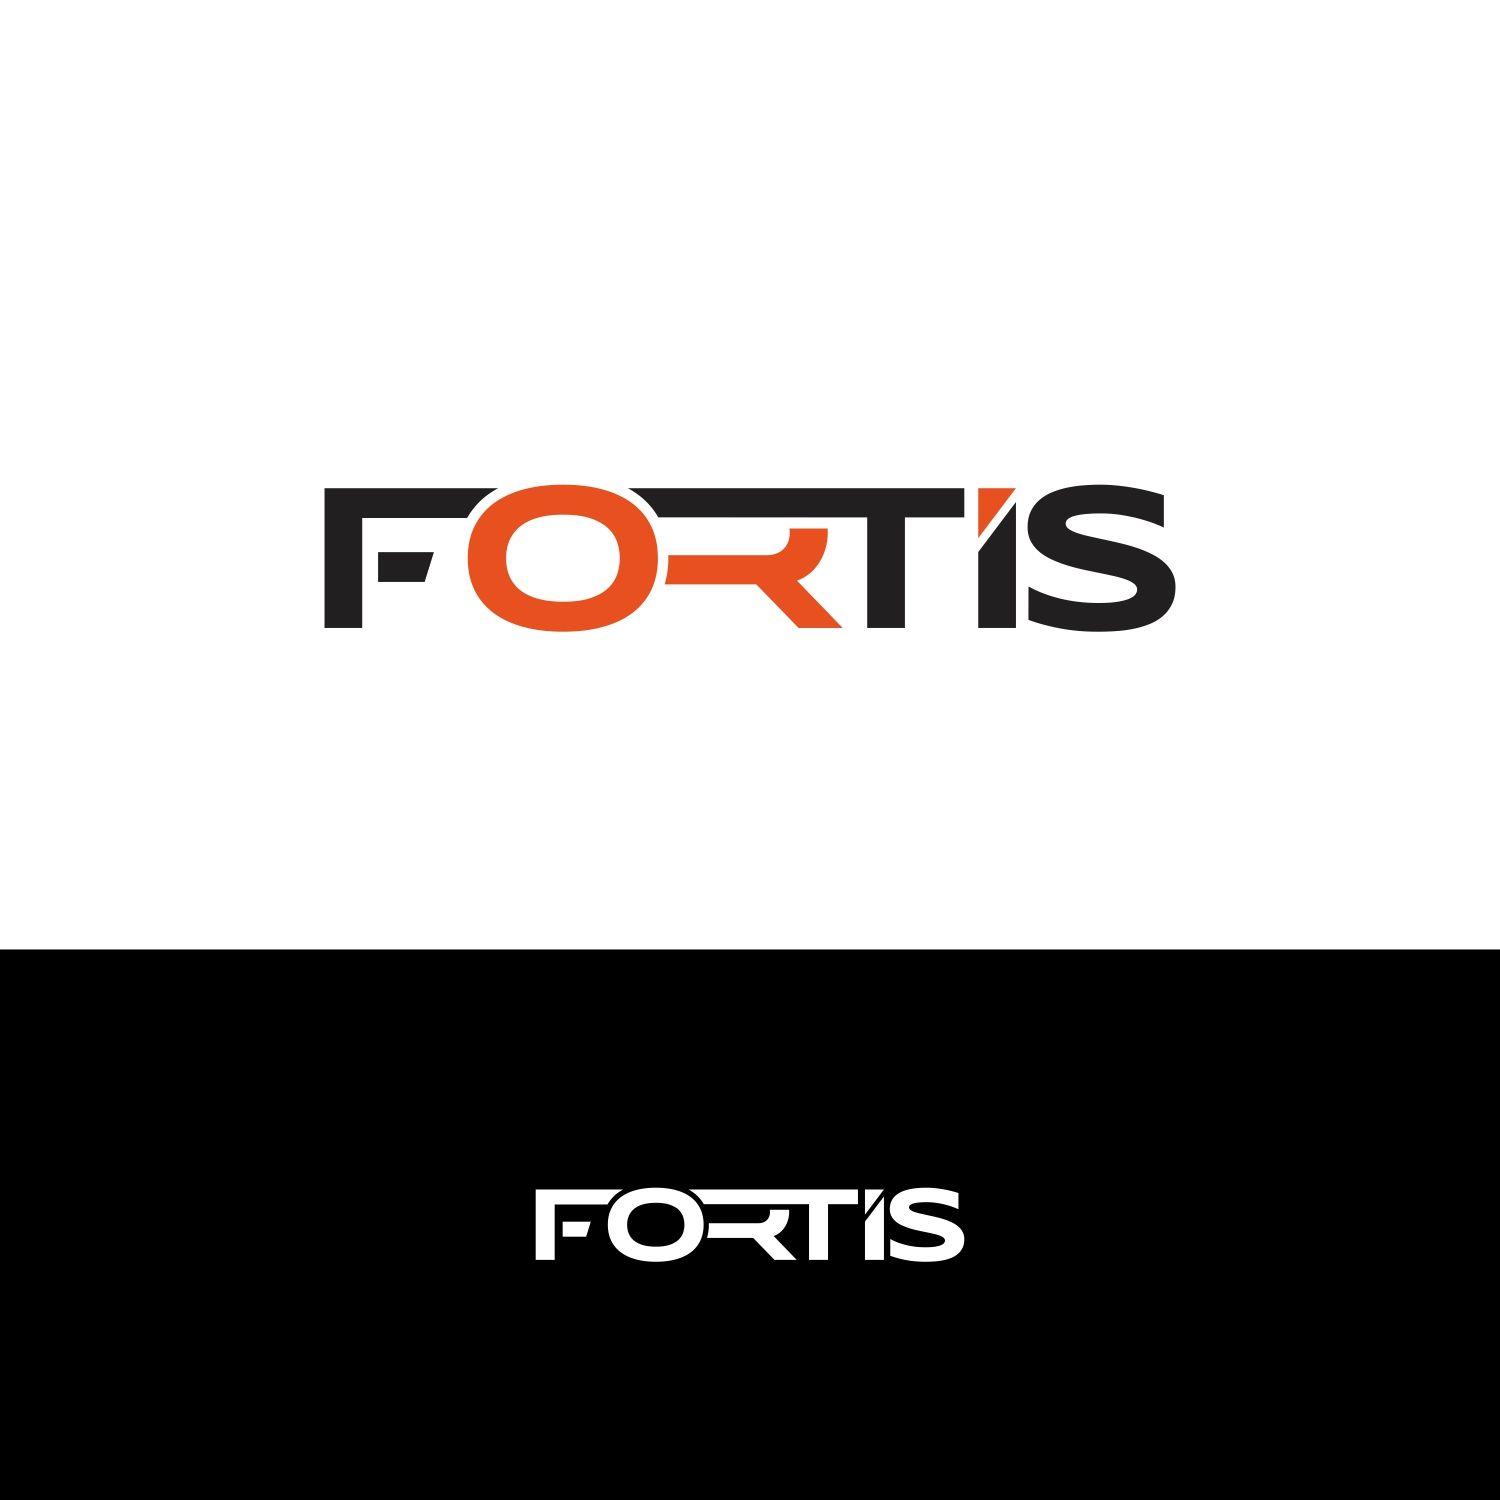 Fortis Logo - Masculine, Conservative Logo Design for Fortis by G Visions | Design ...